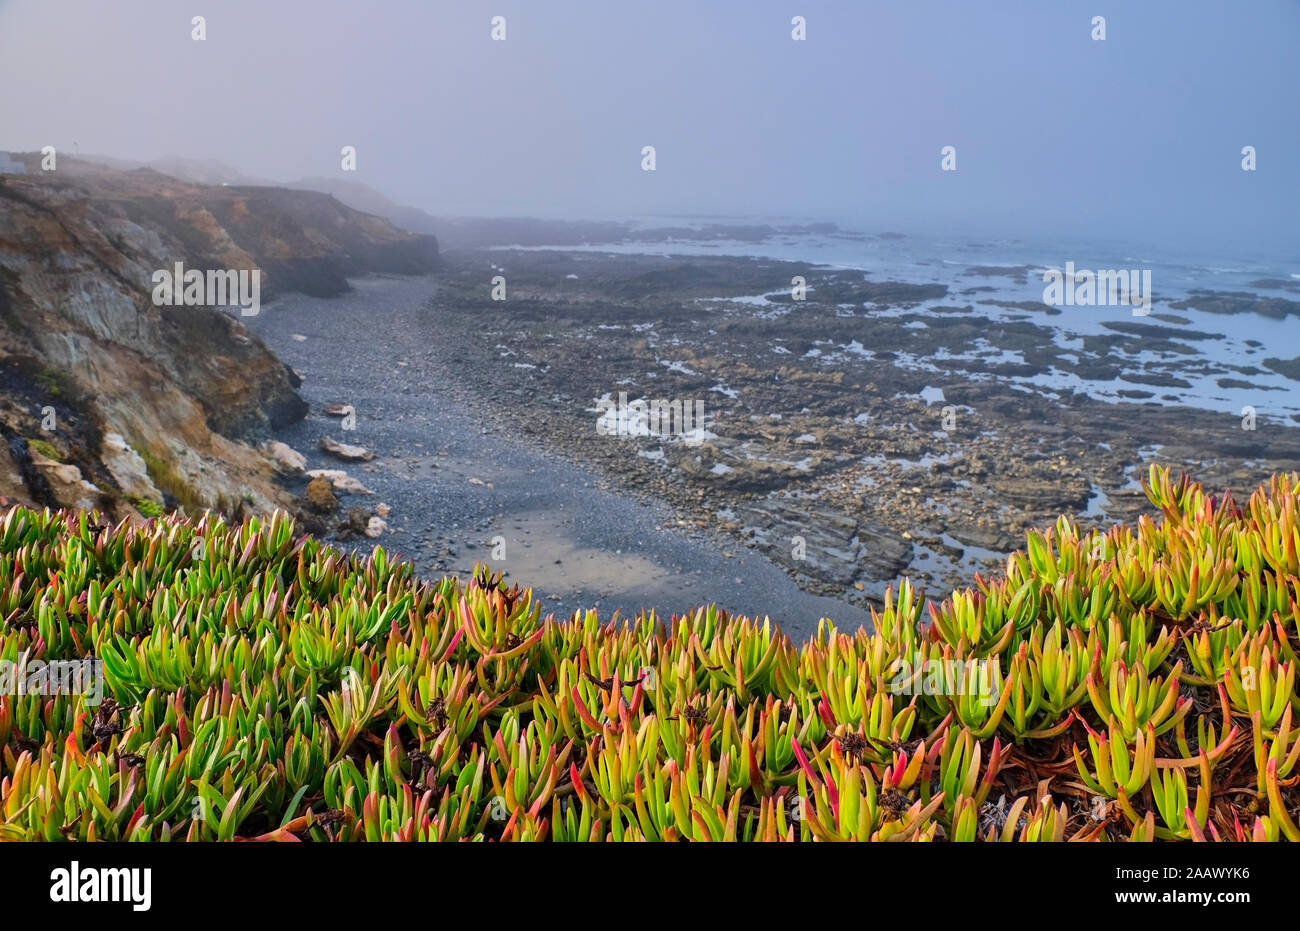 Portogallo Alentejo, Vila nova de Milfontes, piante che crescono nella parte anteriore del litorale roccioso beach Foto Stock